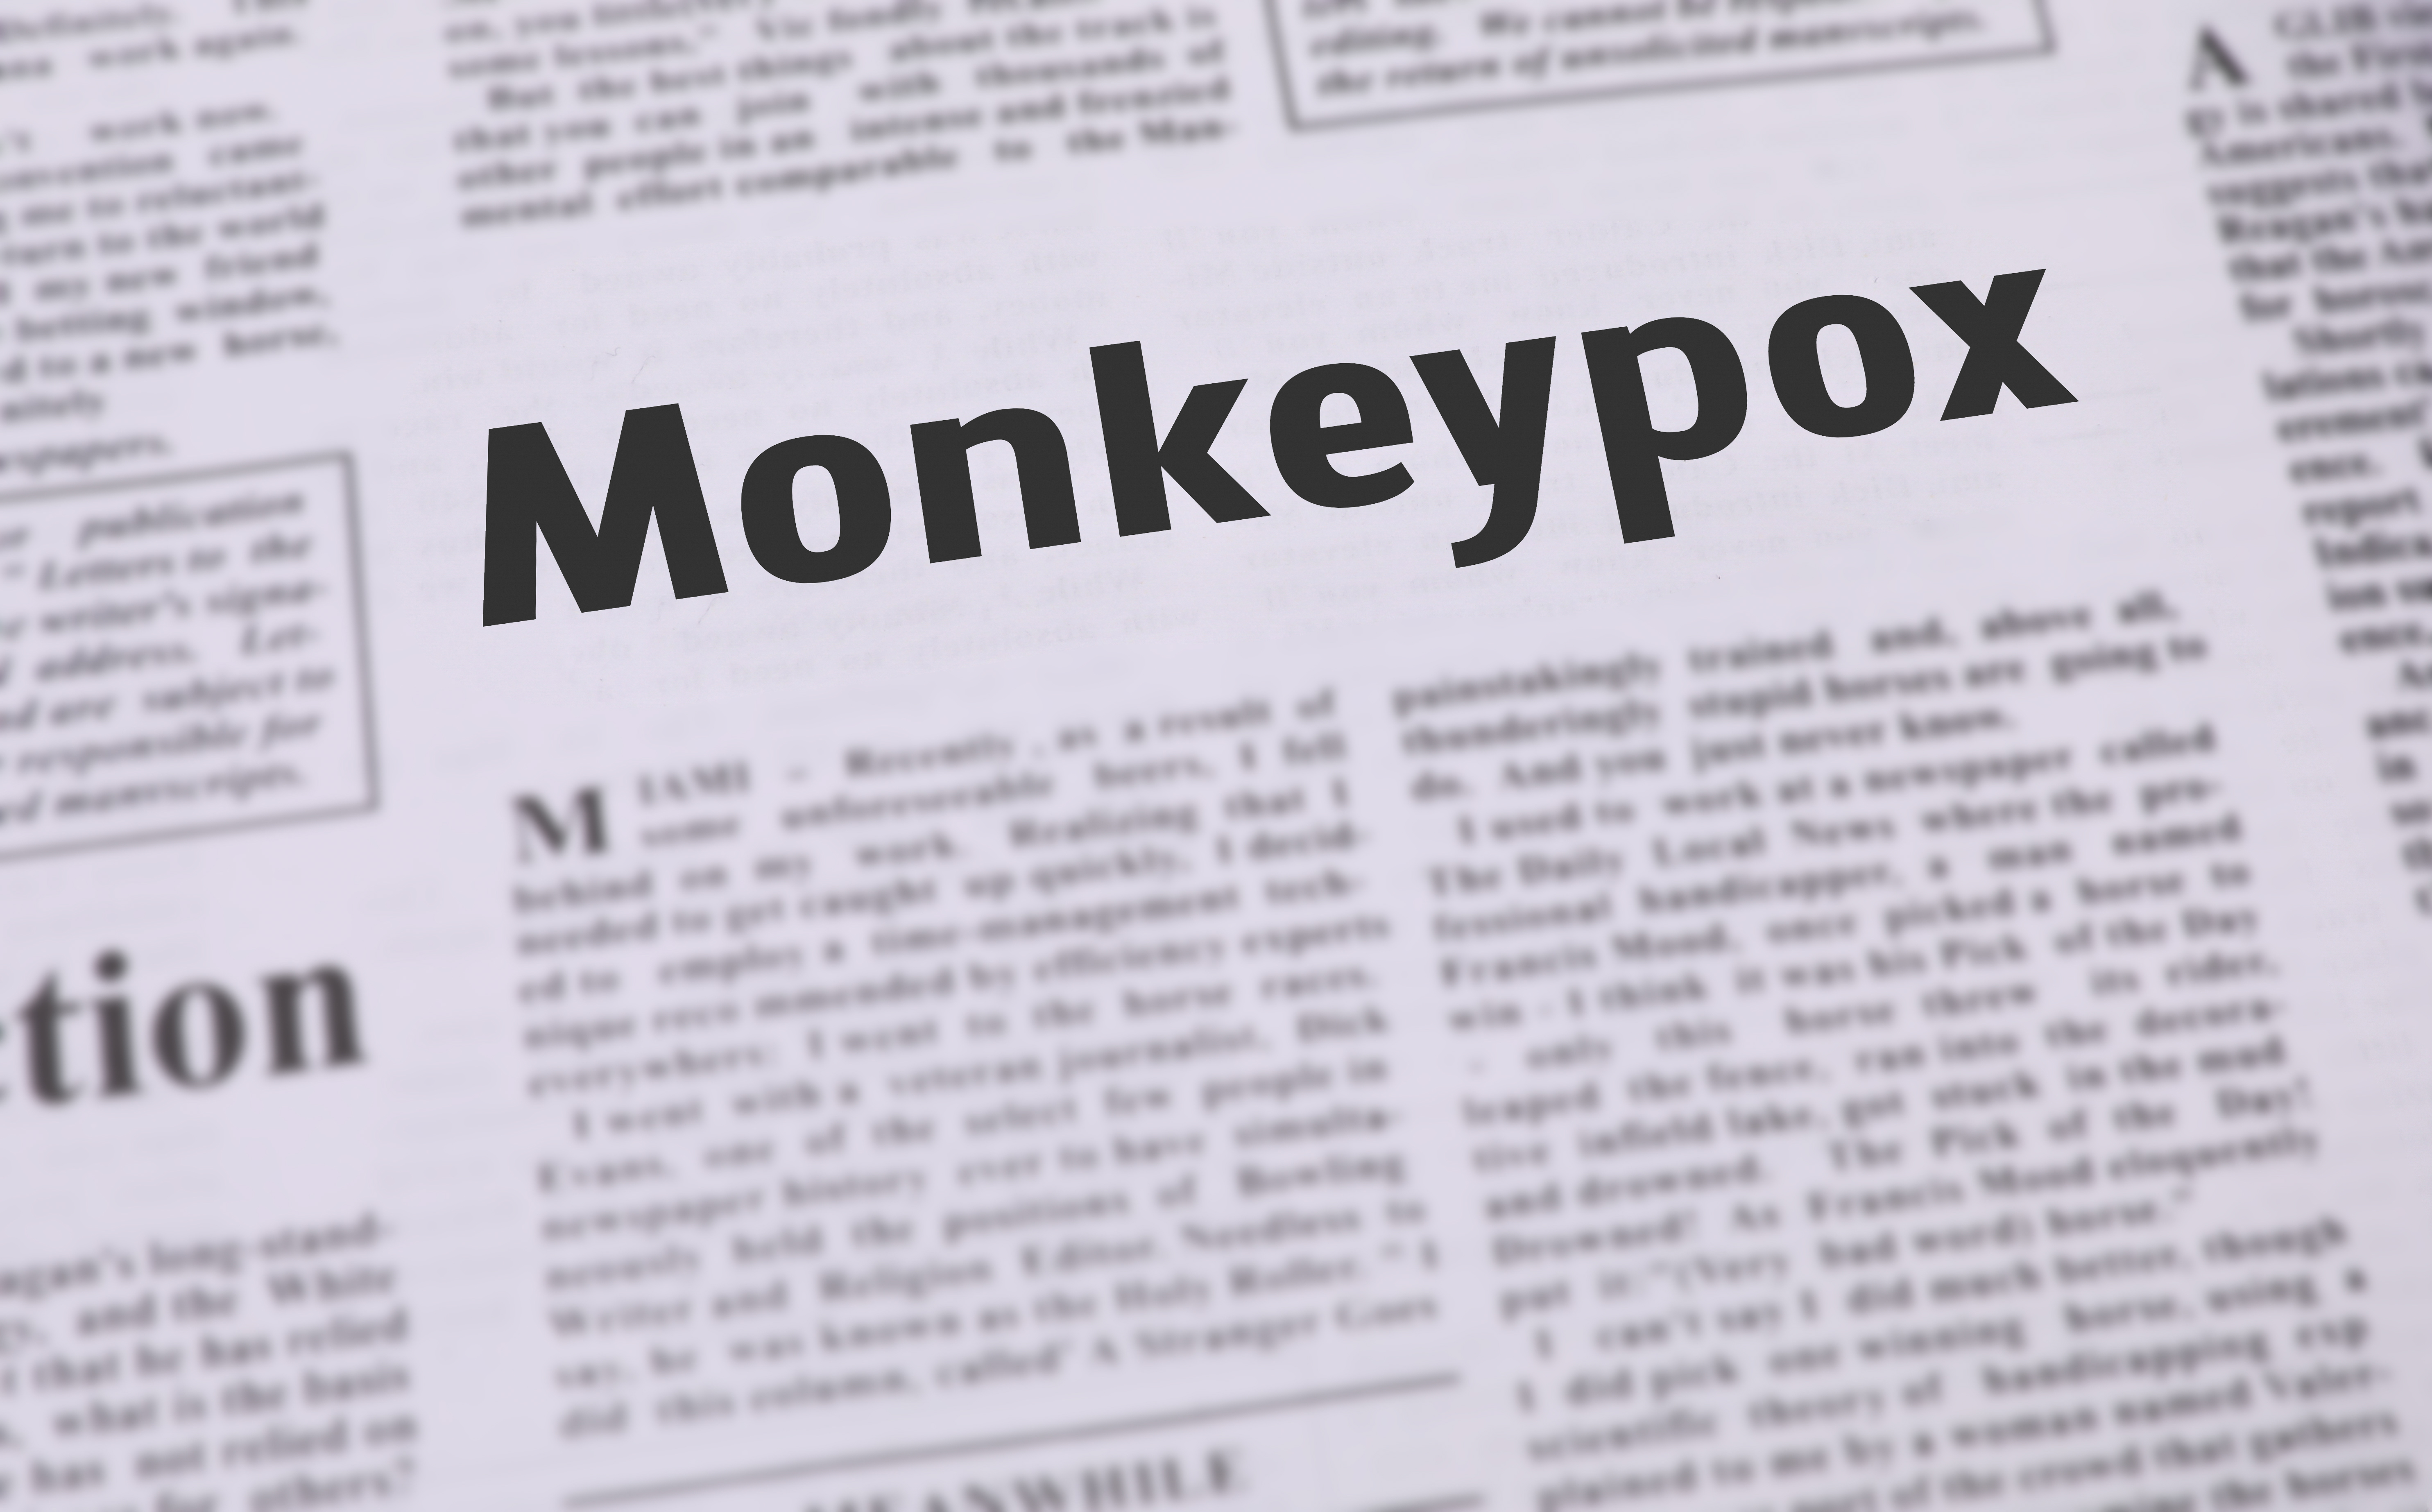 newspaper headlines on monkeypox